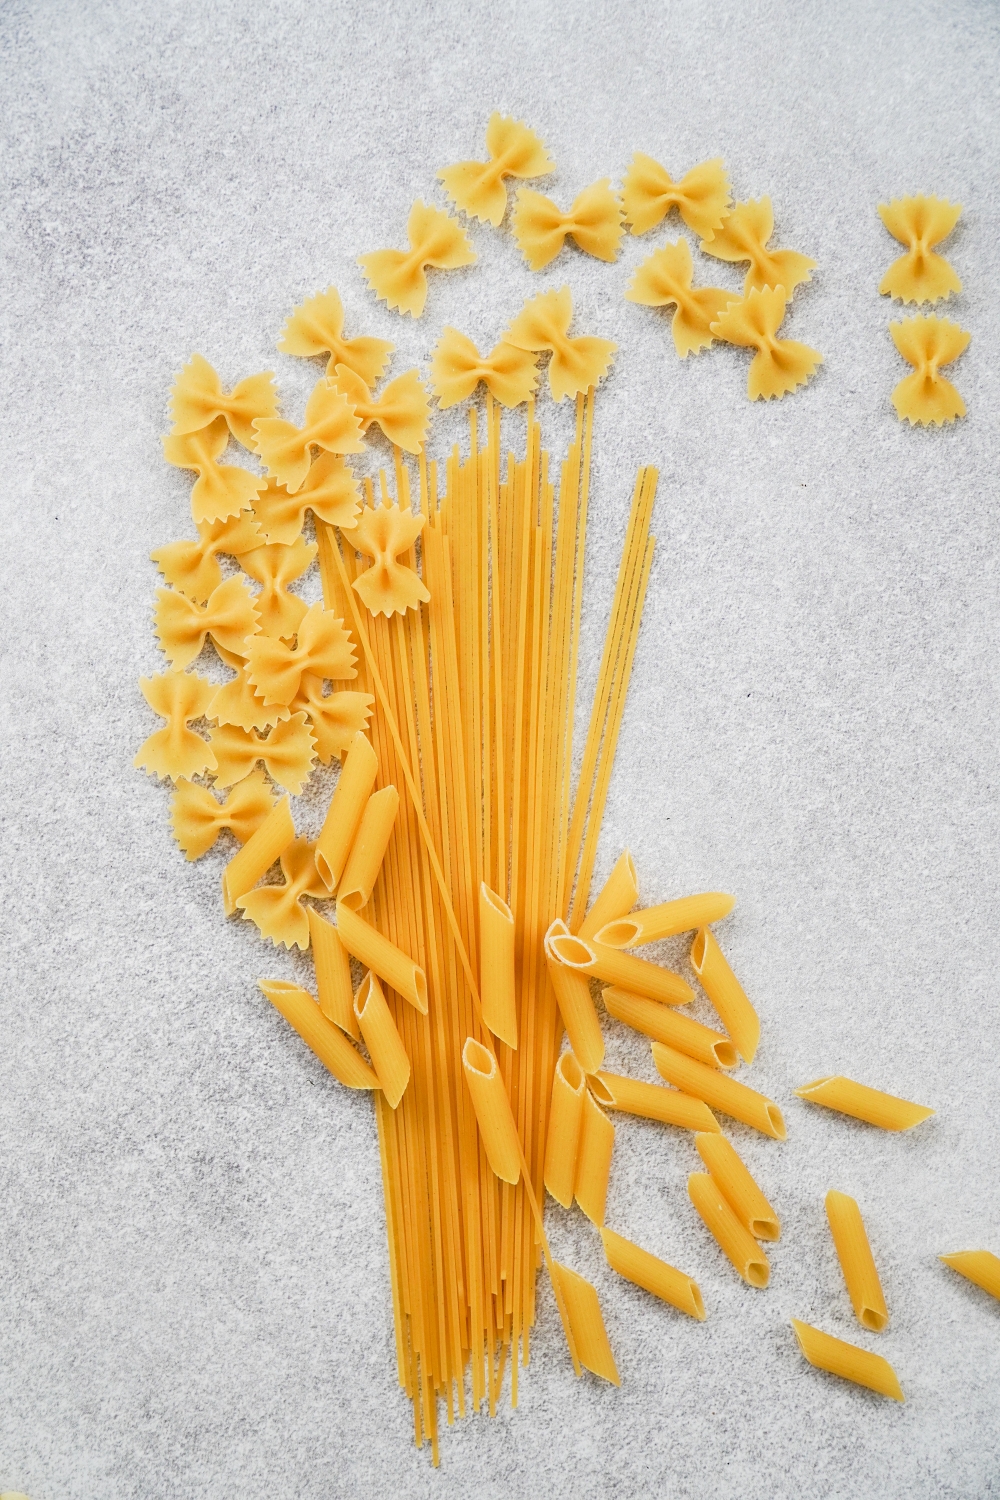 pastas on white background